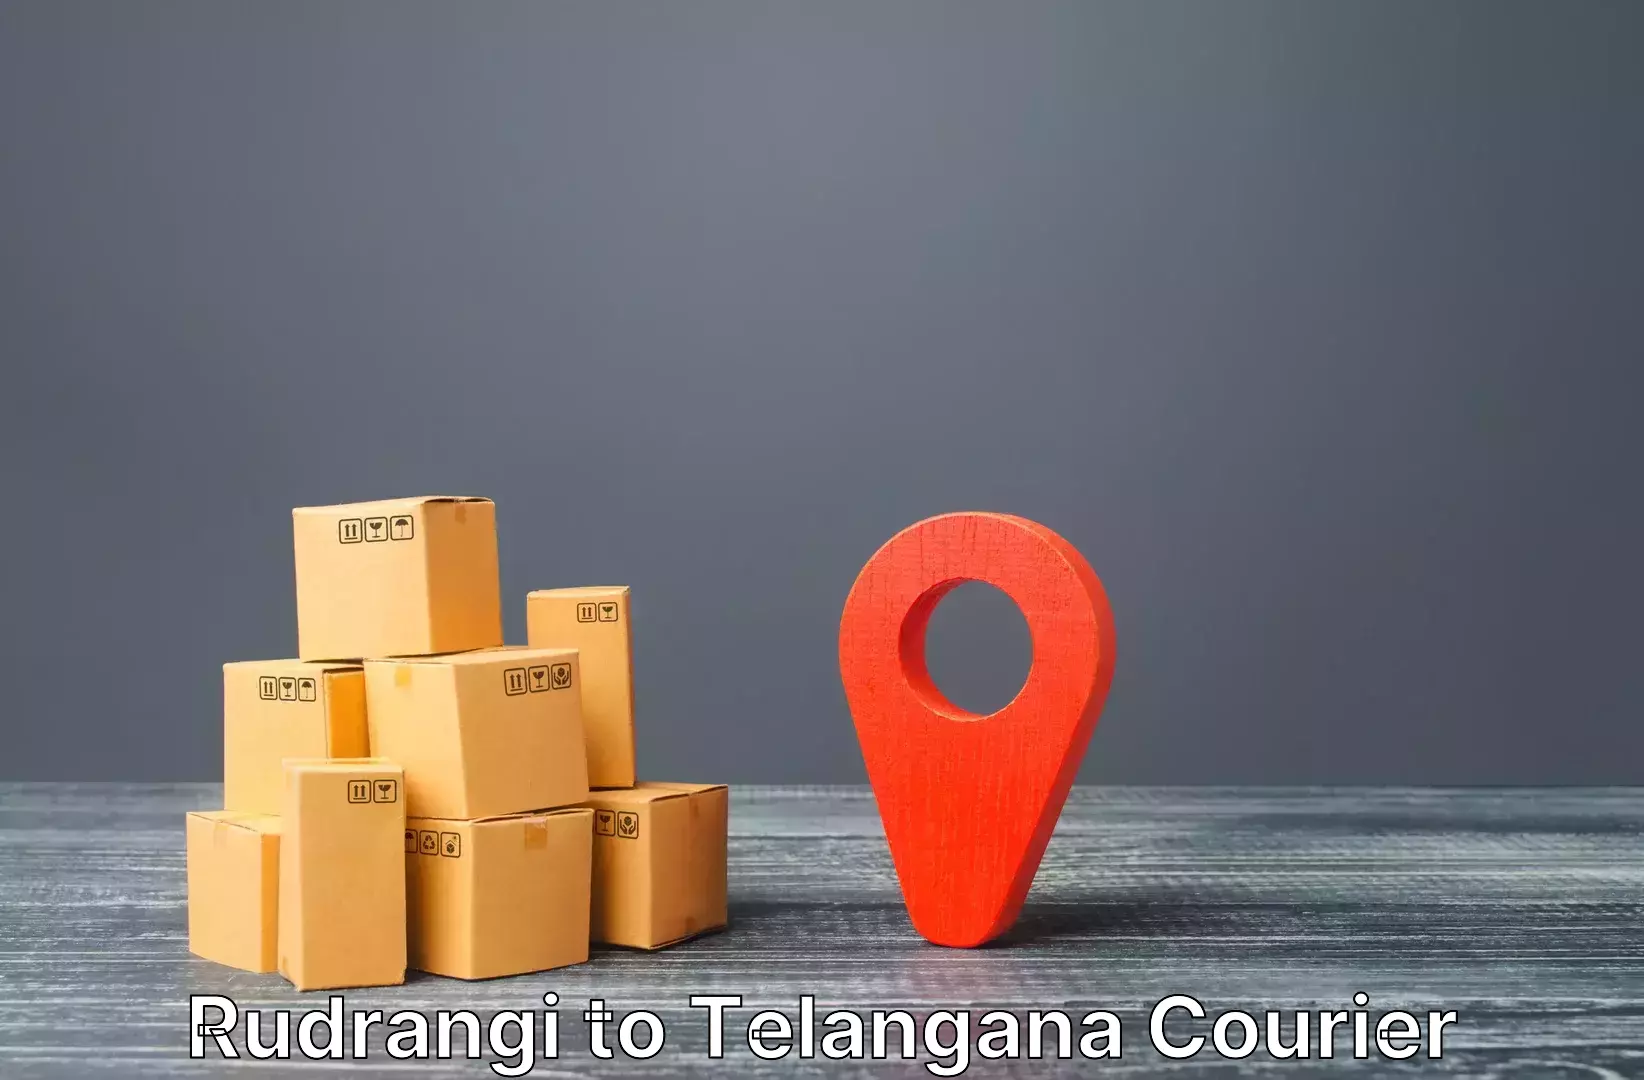 Luggage shipment tracking Rudrangi to Dubbak